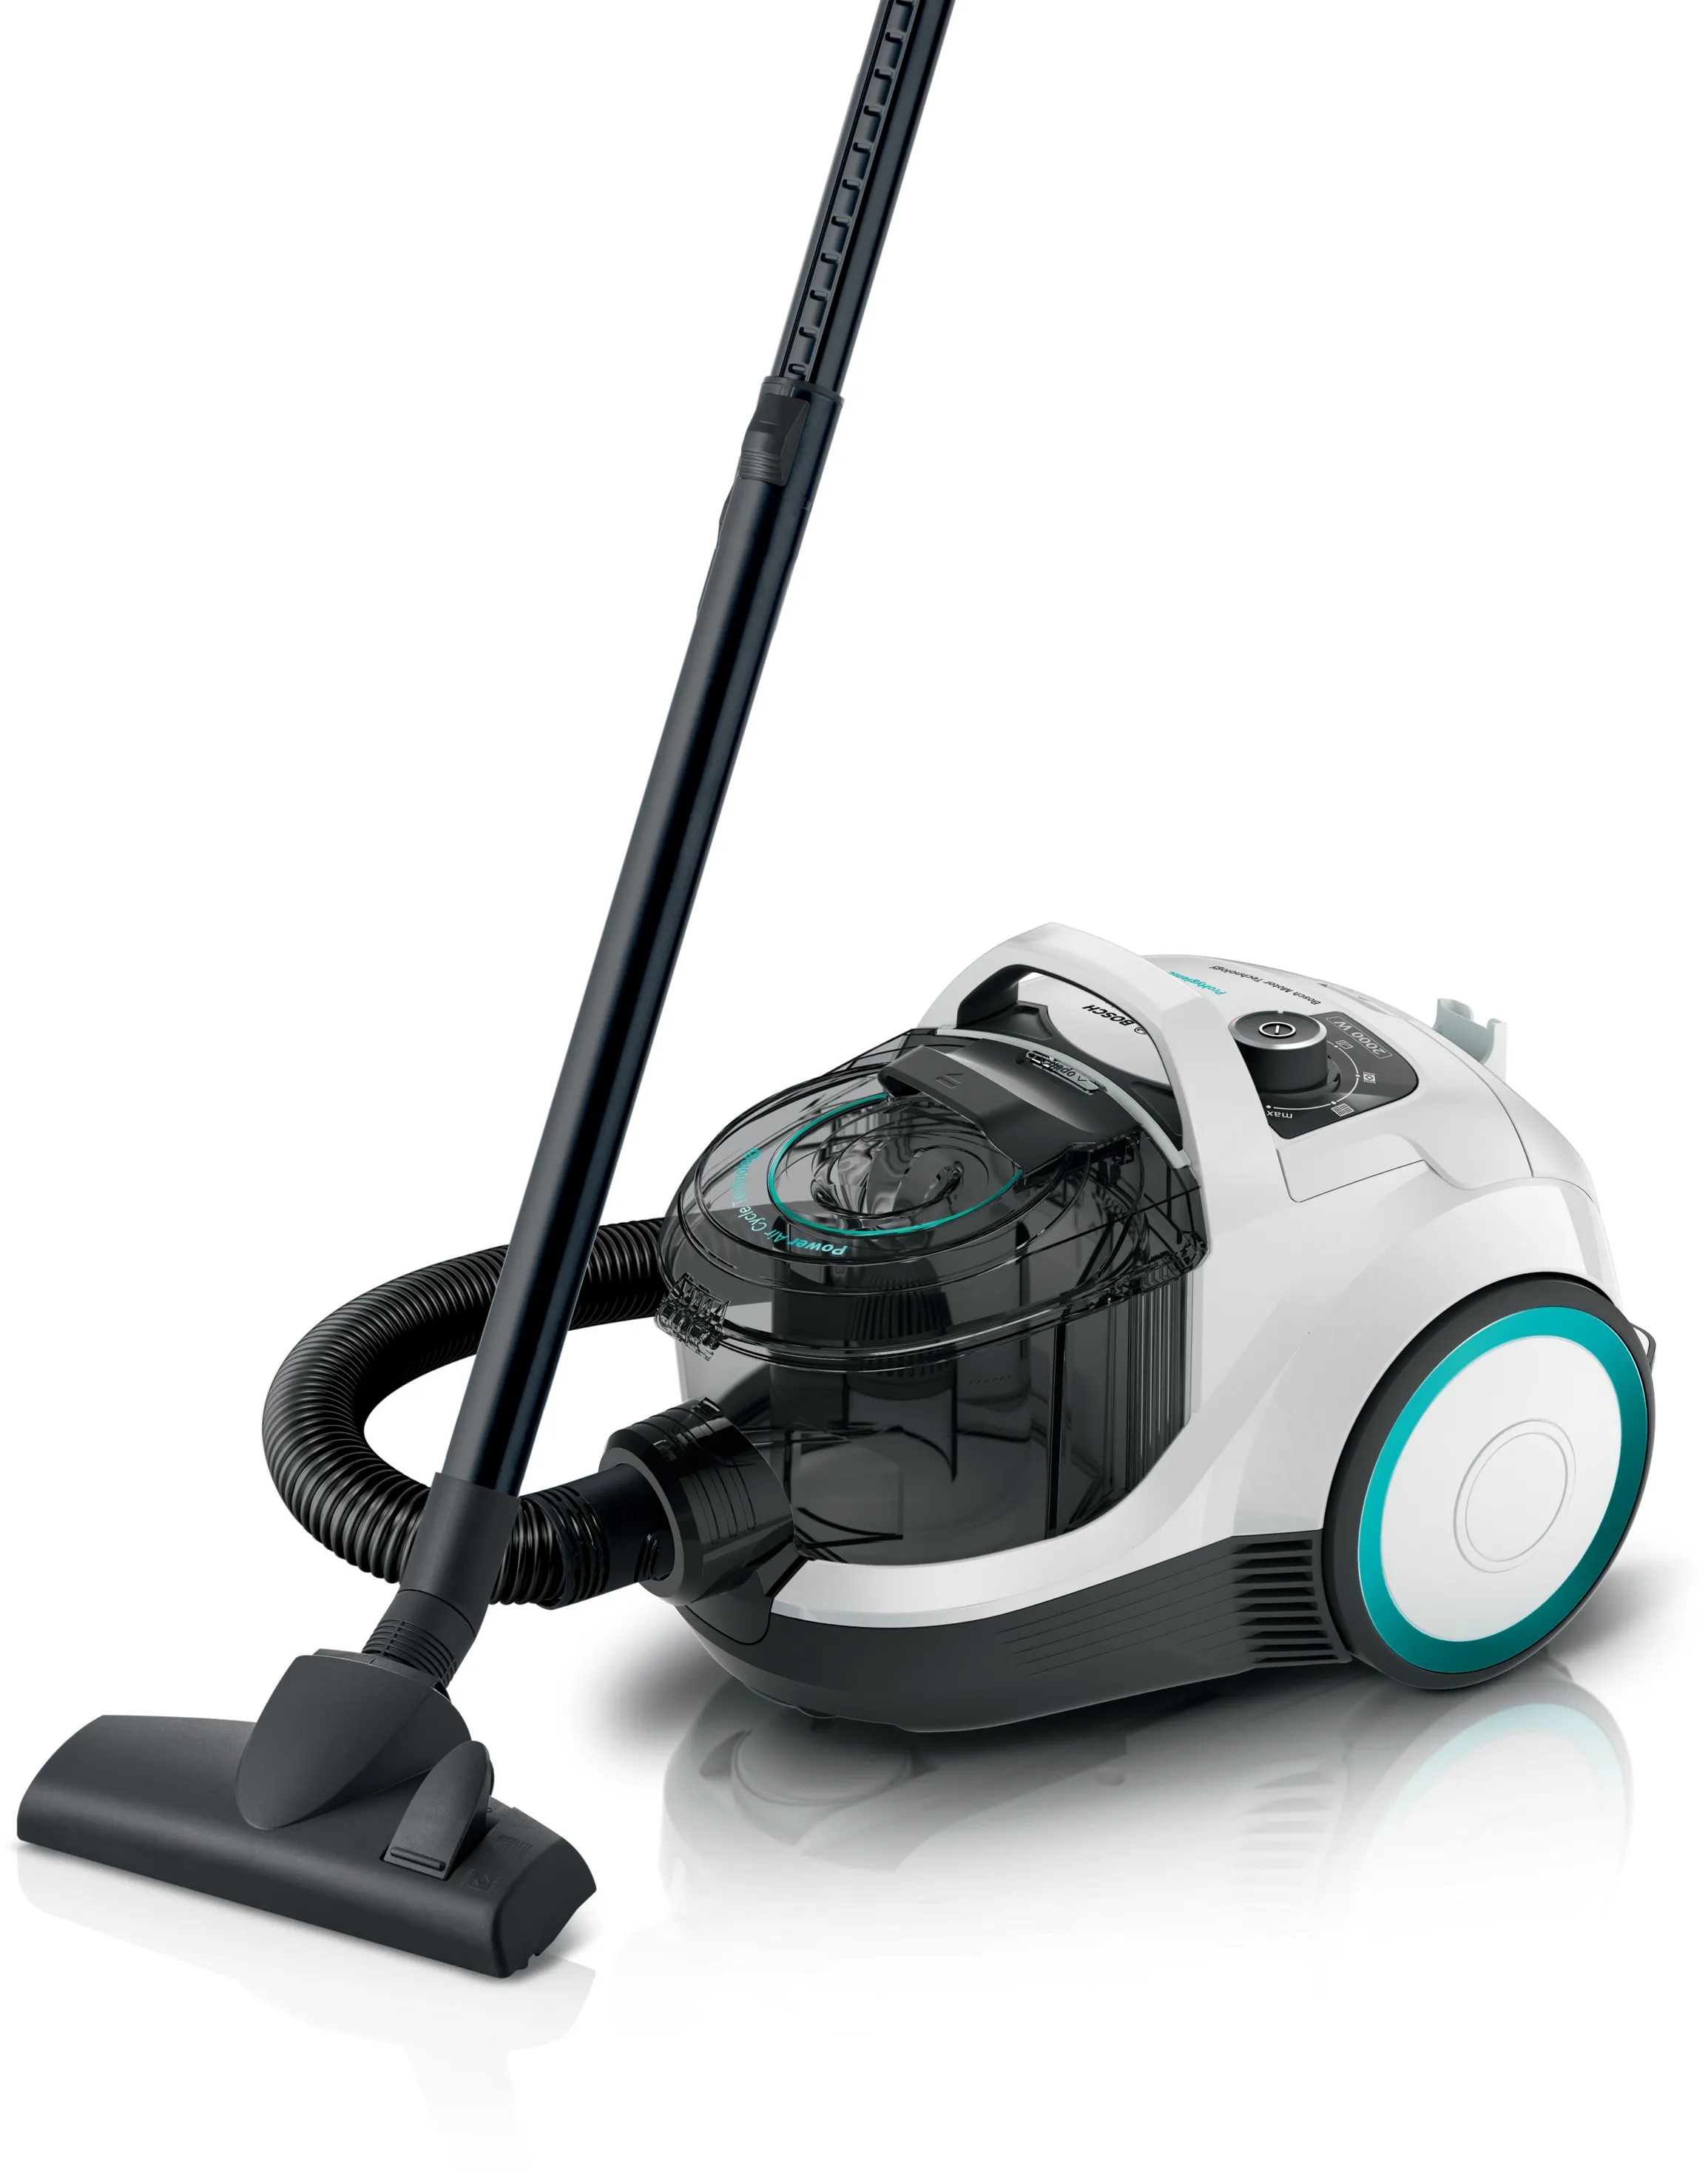 ซีรี่ 4 Bagless vacuum cleaner ProHygienic สีขาว 